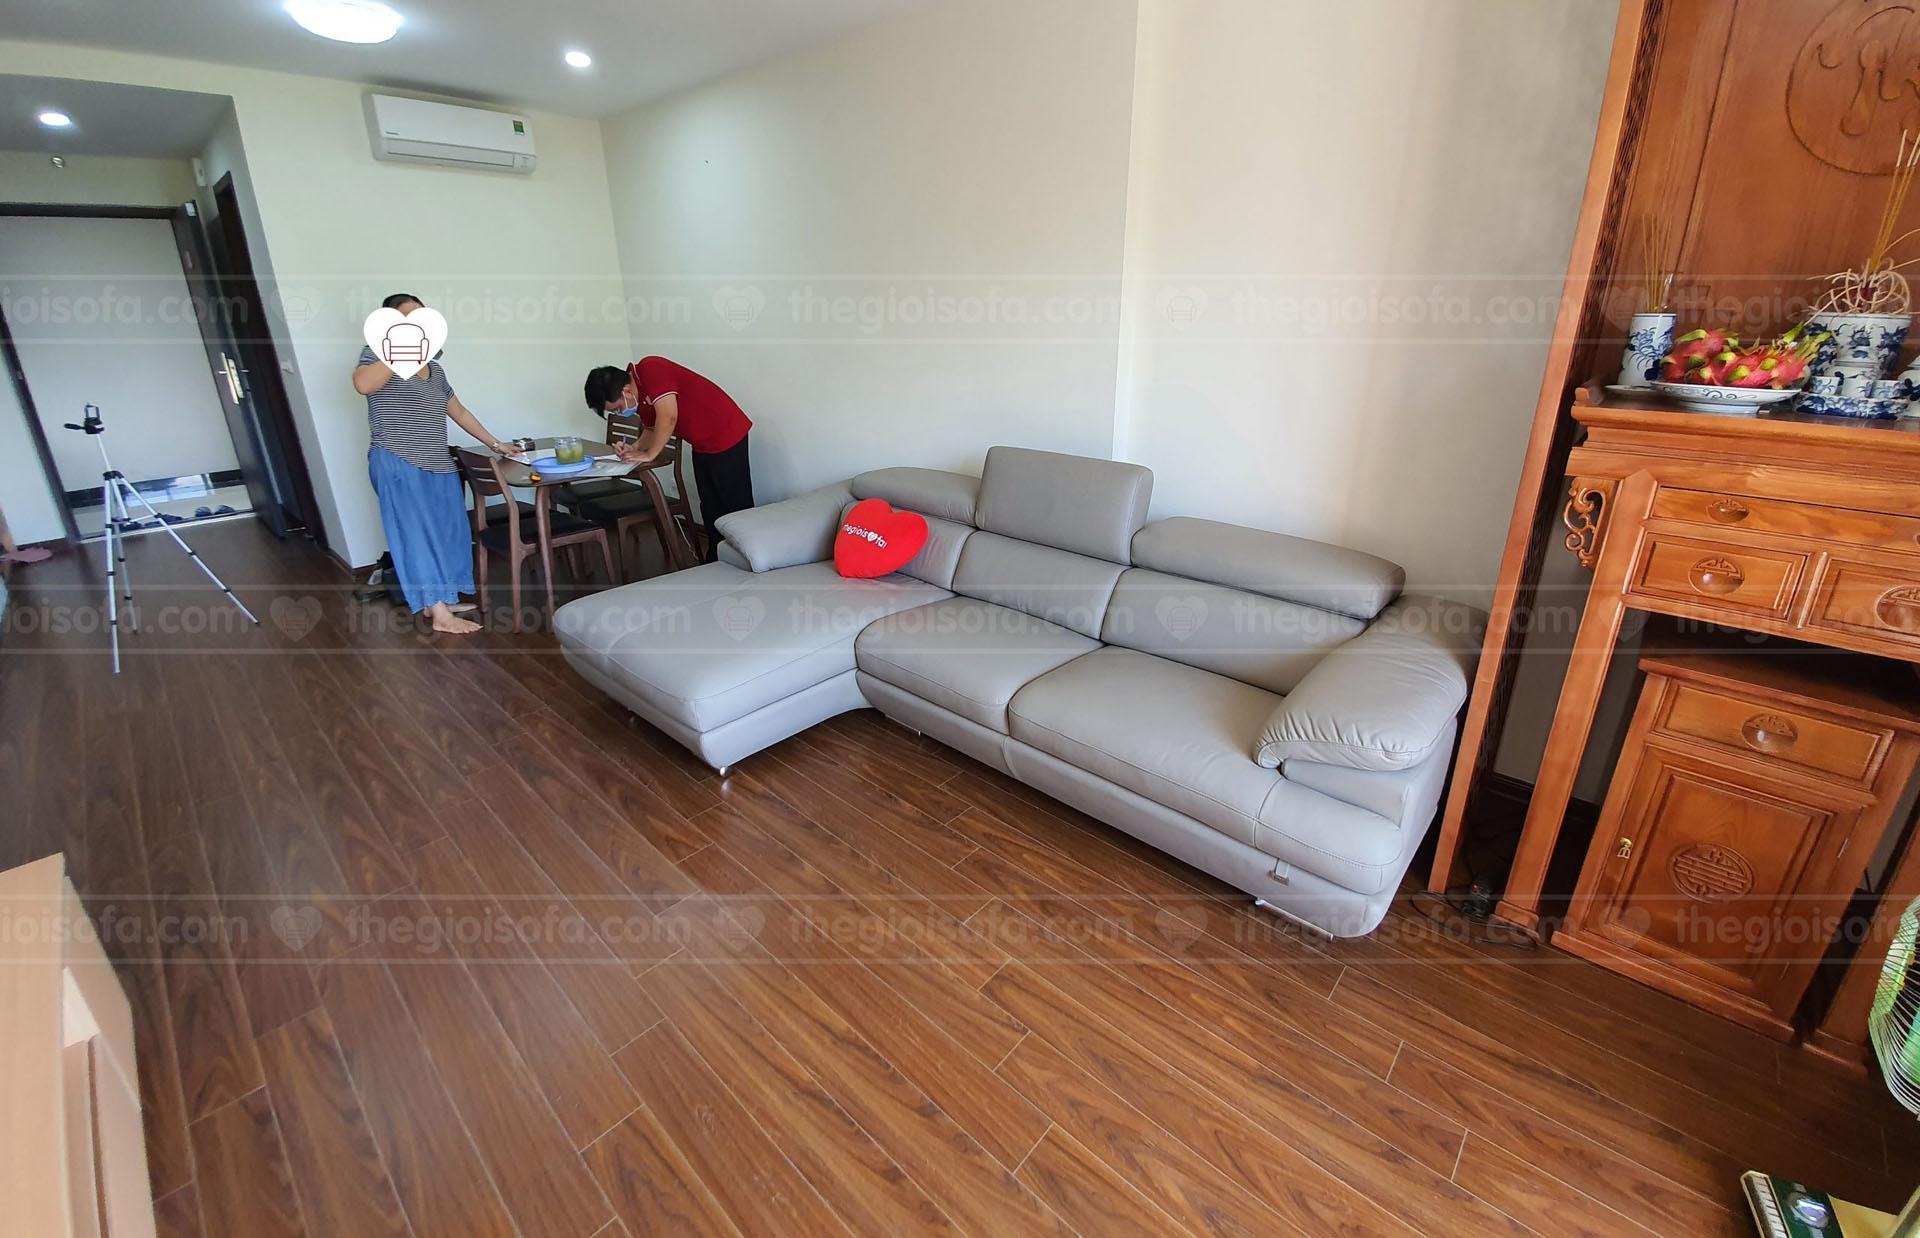 Giao hàng sofa da góc Malaysia ZL2682 cho chị Lan tại Homeland – Quận Long Biên